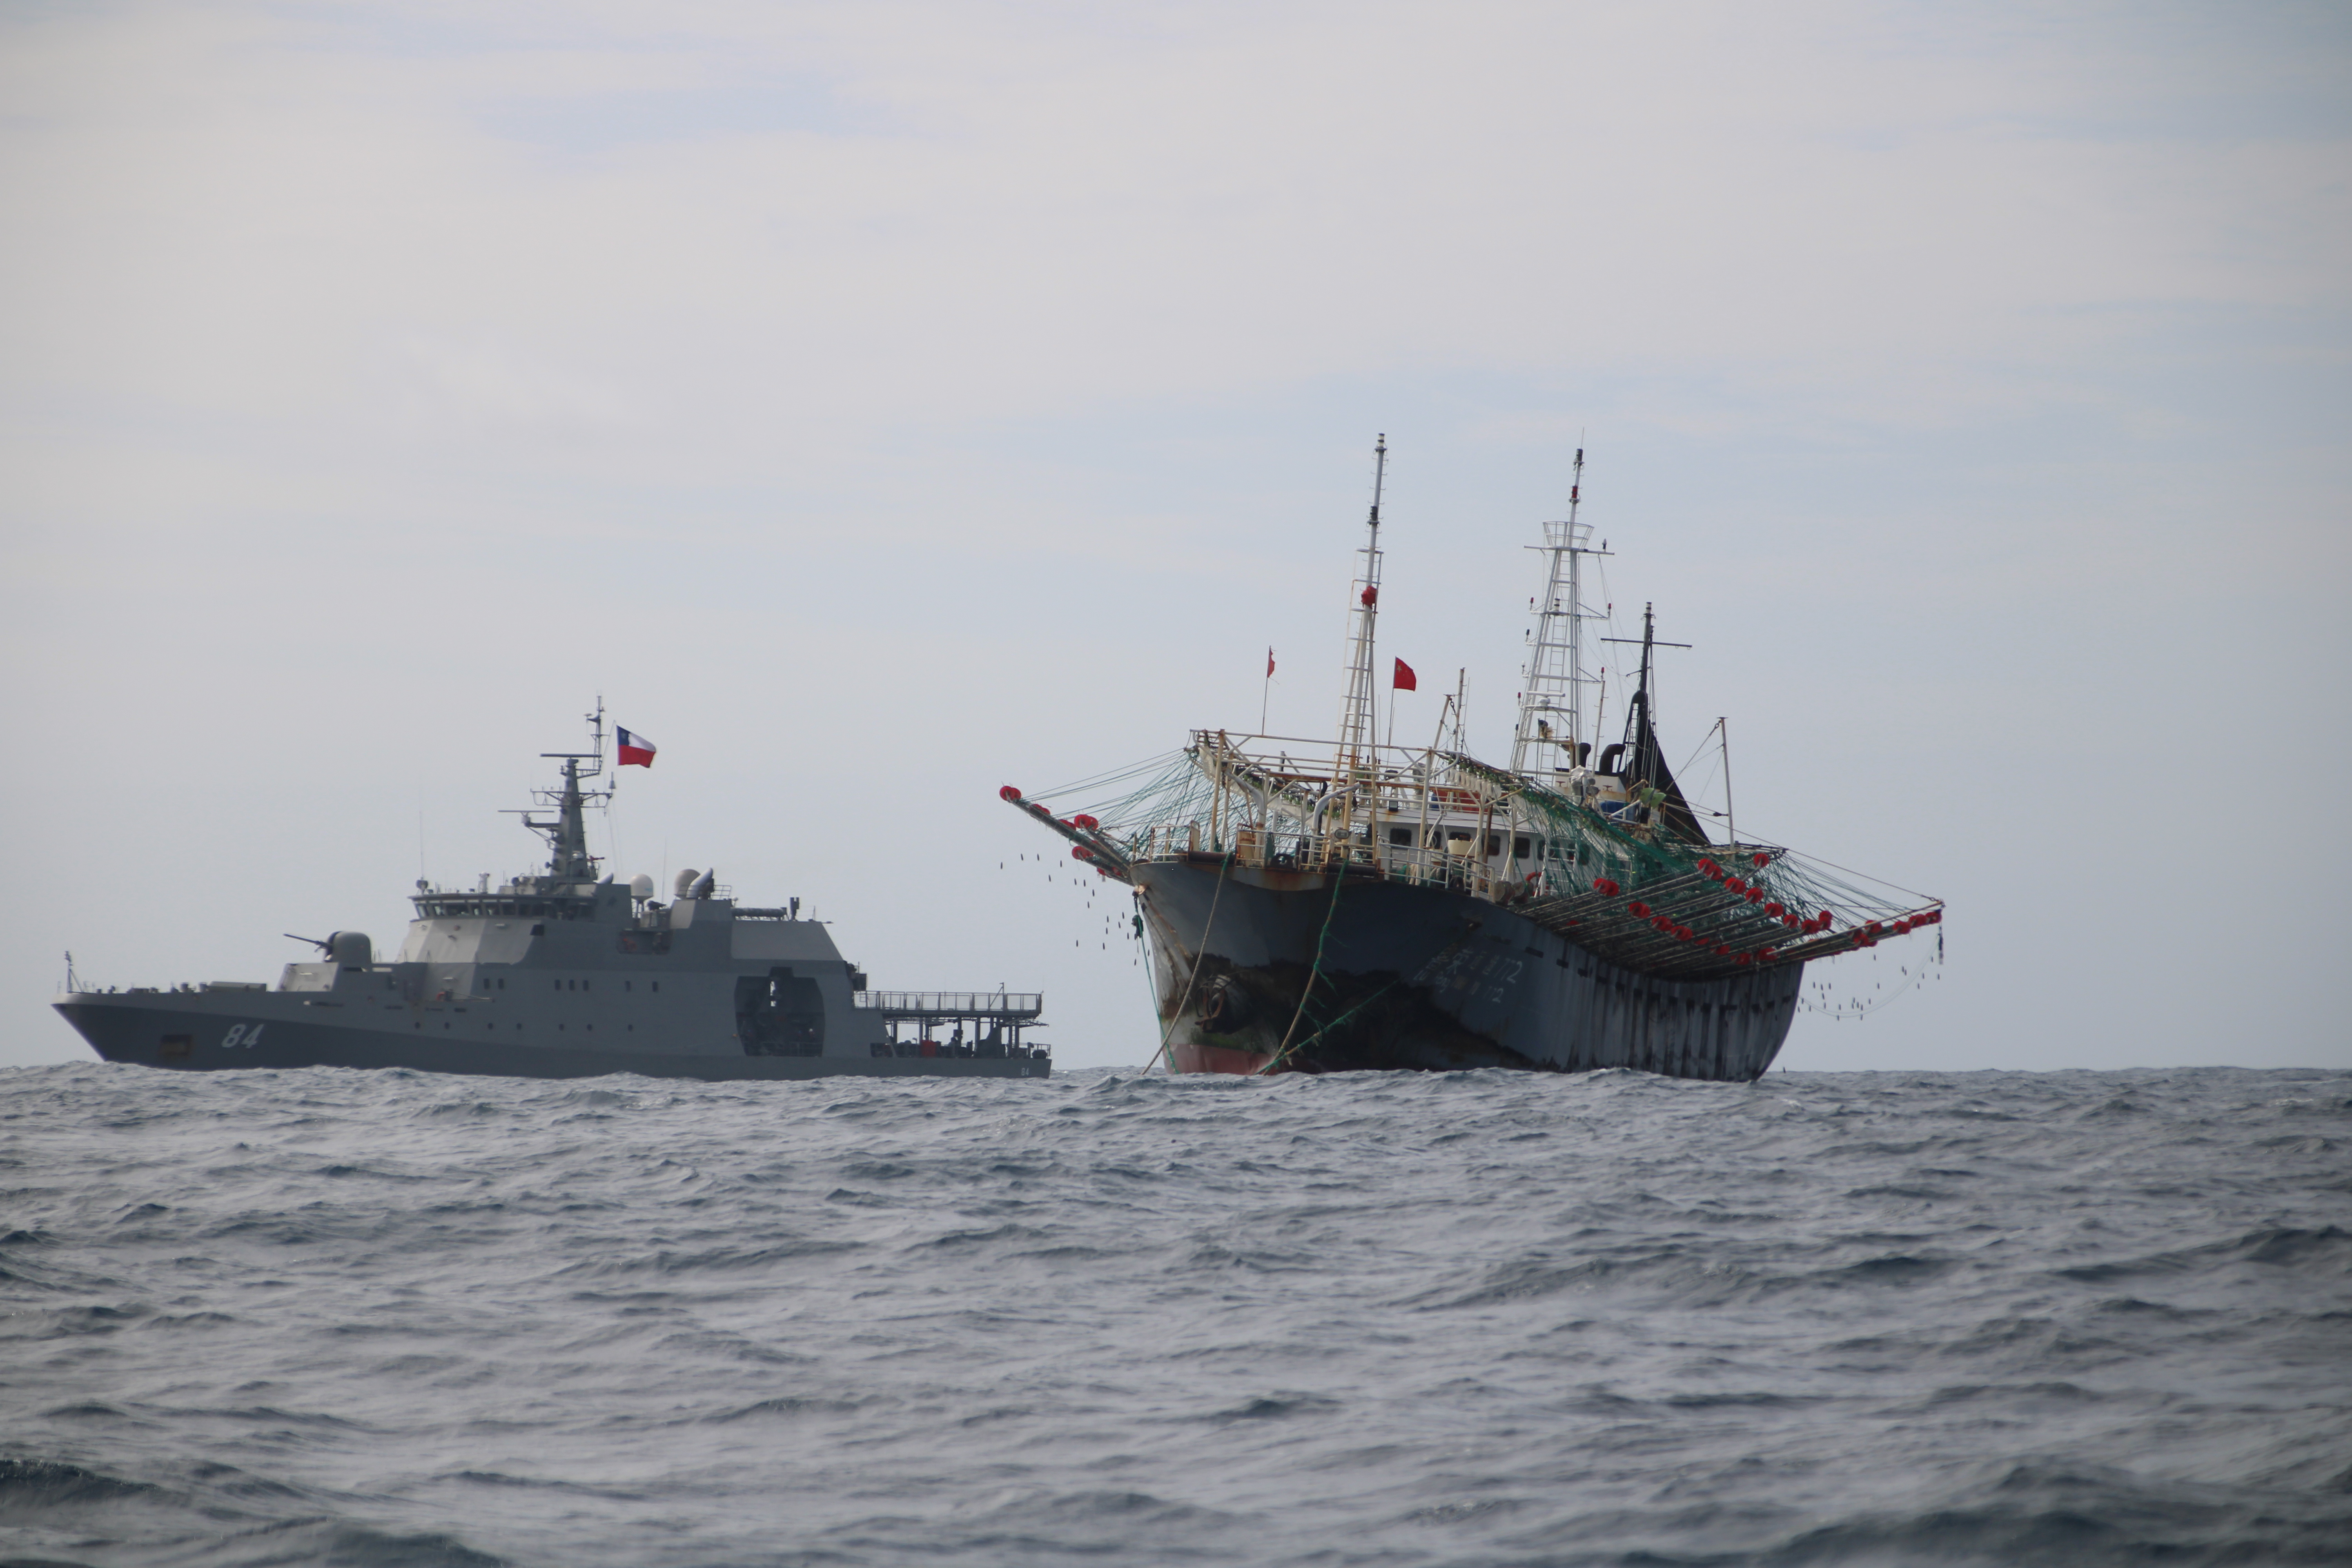 Un buque, que forma parte de una flota de cientos de barcos pesqueros chinos, navega en aguas internacionales del Océano Pacífico cerca de la zona marítima económica exclusiva de Chile (Foto: REUTERS)
